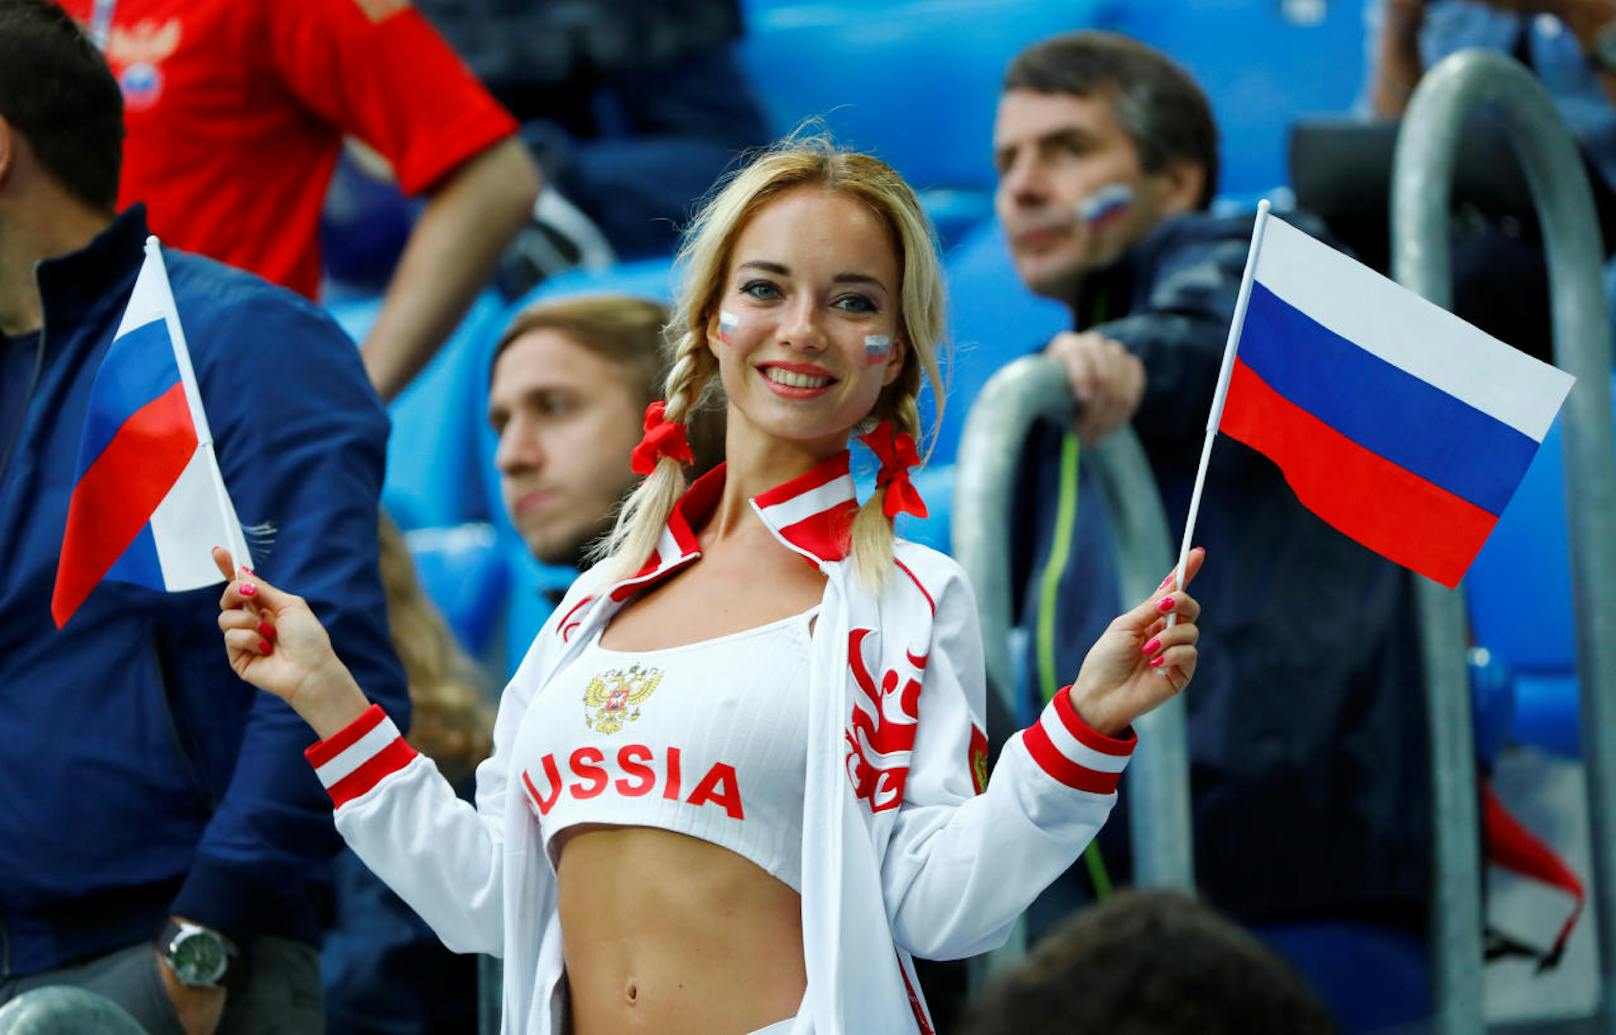 Fußball-Fest in Russland! Tausende Fans fieberten 2018 bei der WM in den Stadien mit - meist bestens gelaunt. "Heute" fand die schönsten und kuriosesten Schlachtenbummler.